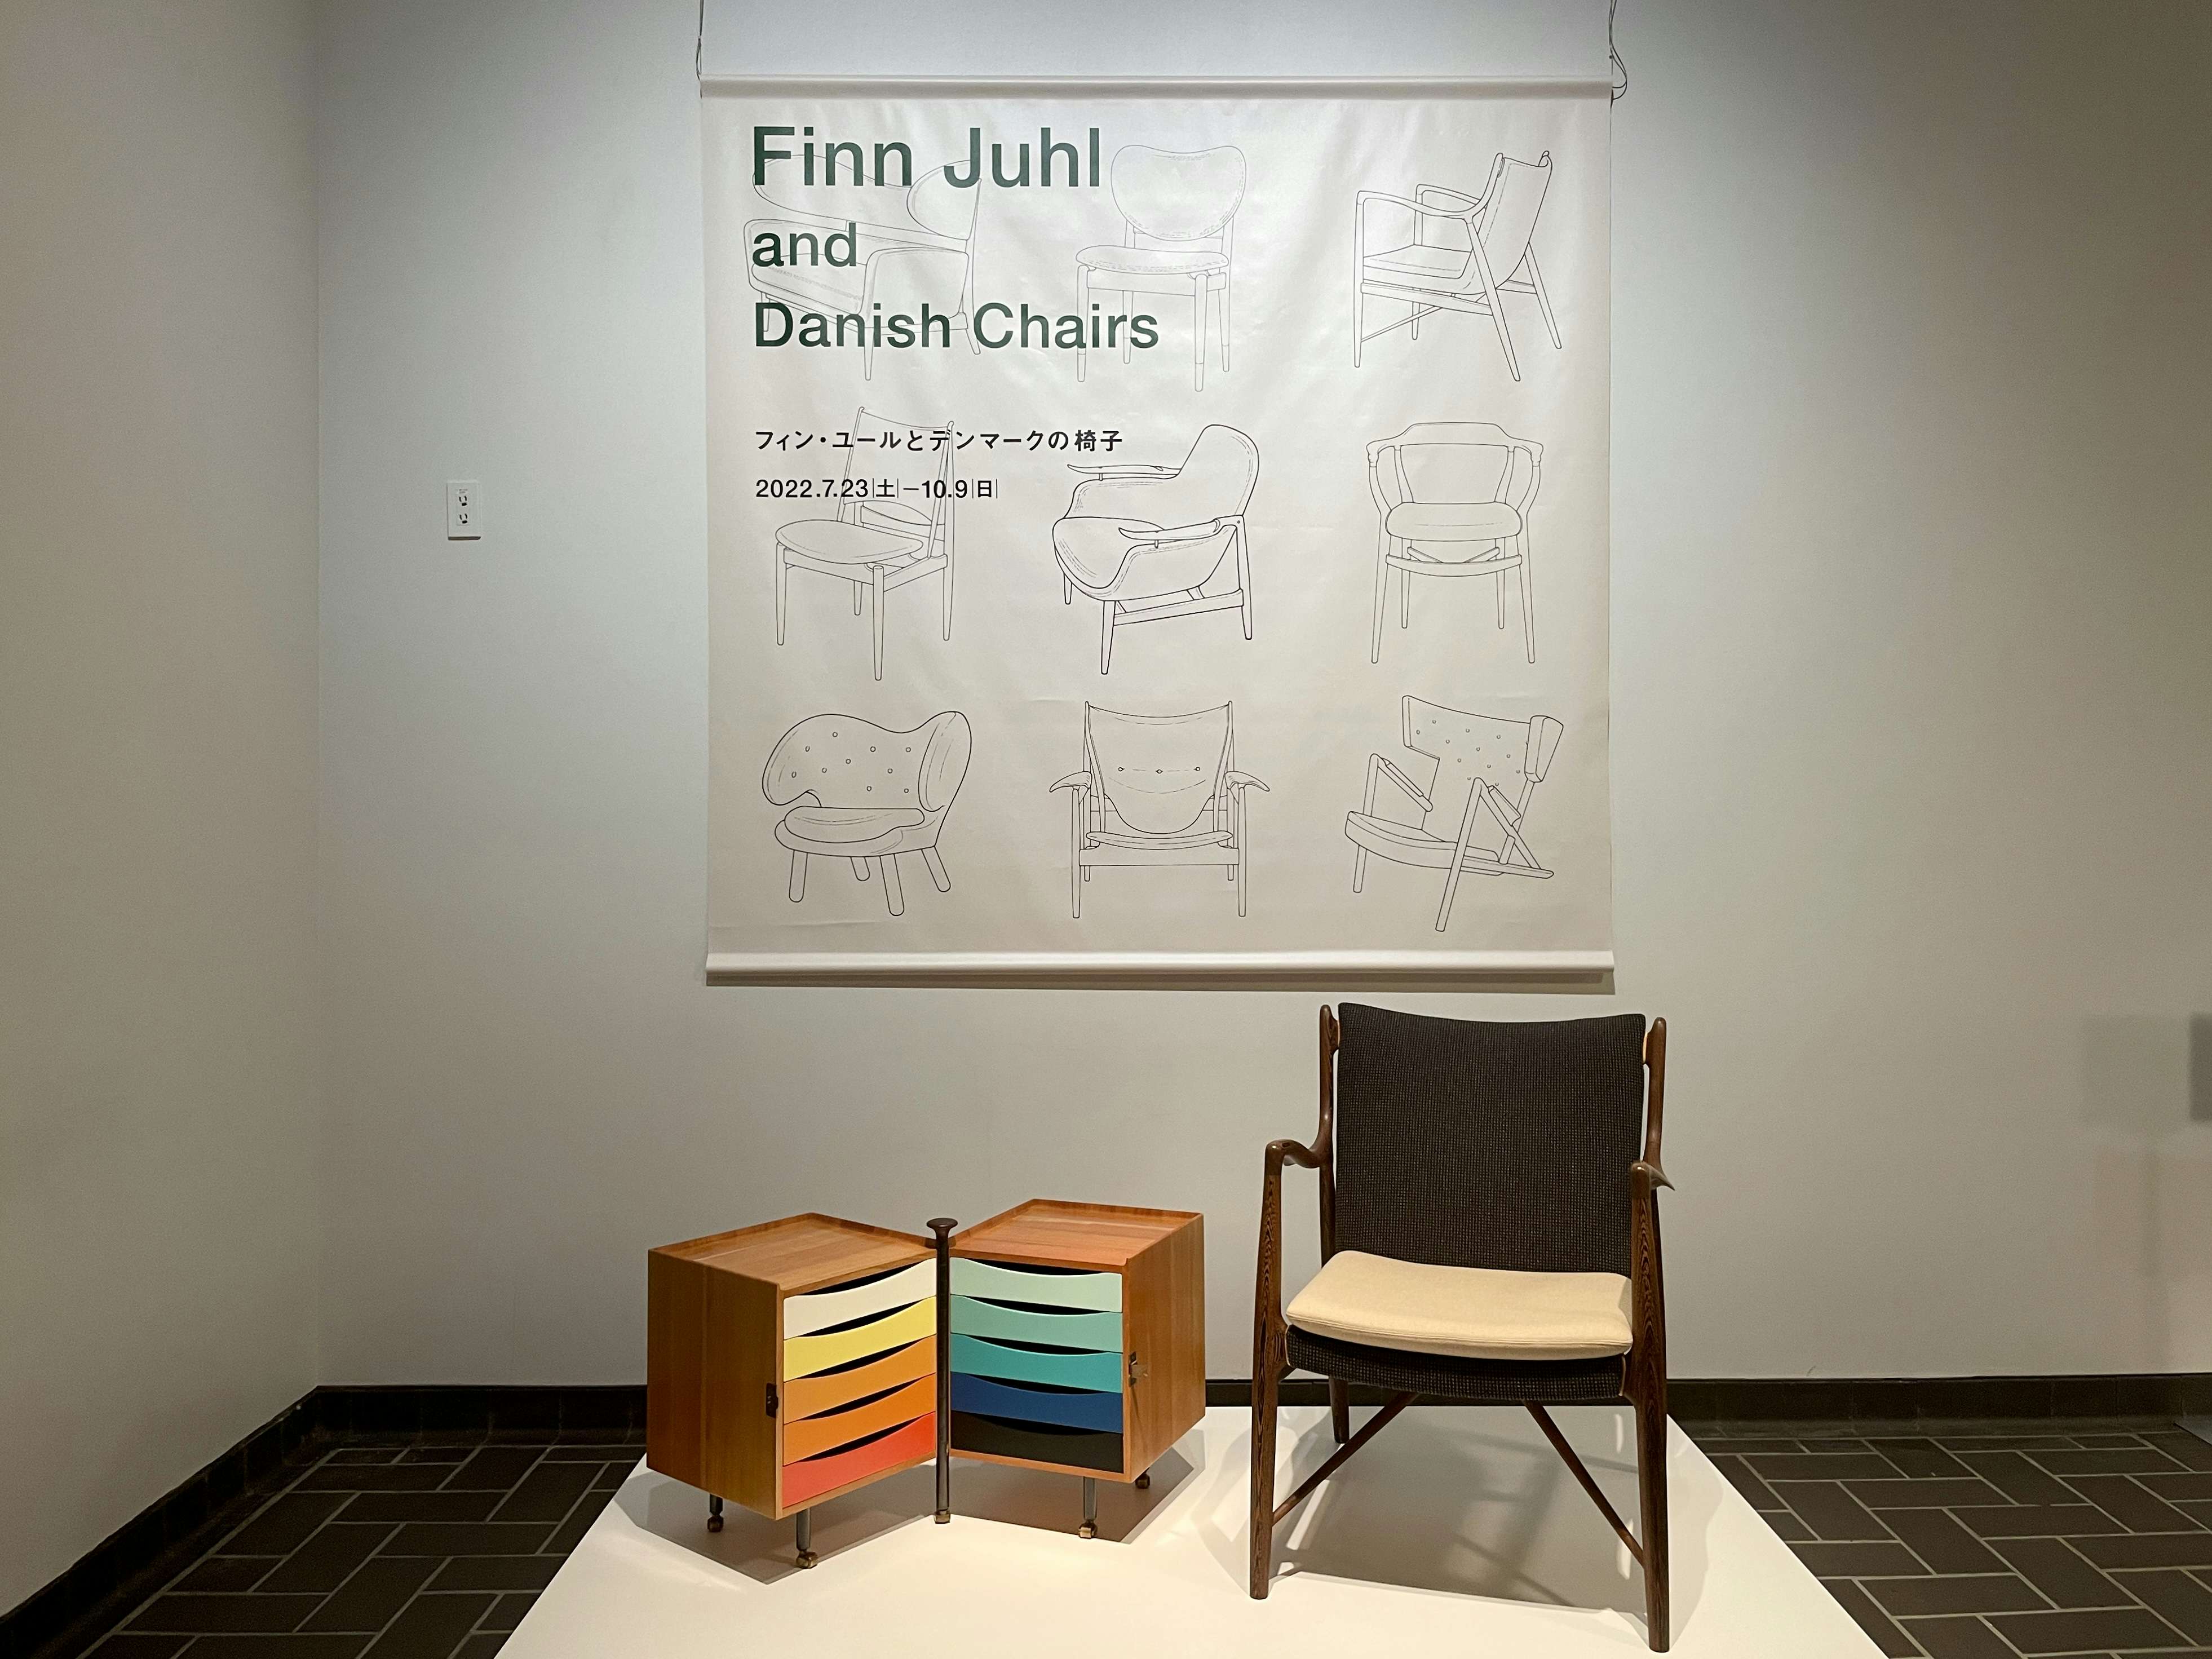 デンマークの家具デザインの変遷をたどる。「フィン・ユールと